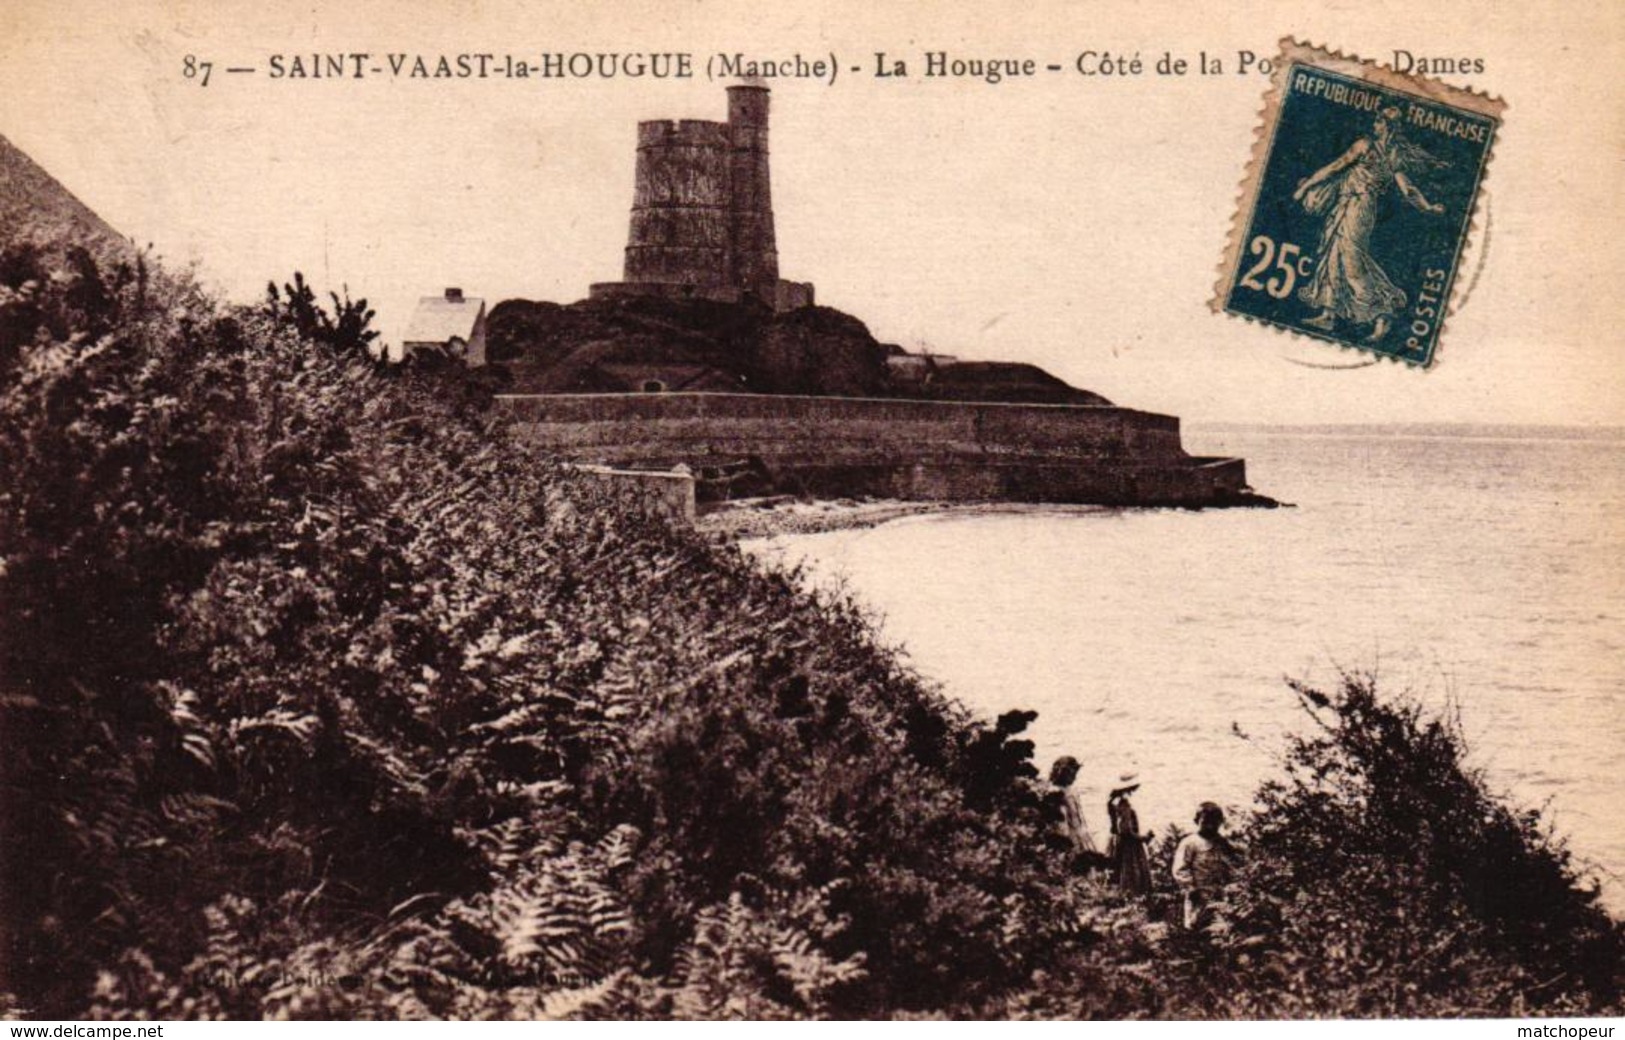 SAINT VAAST LA HOUGUE -50- LA HOUGUE COTE DE LA PORTE AUX DAMES - Saint Vaast La Hougue